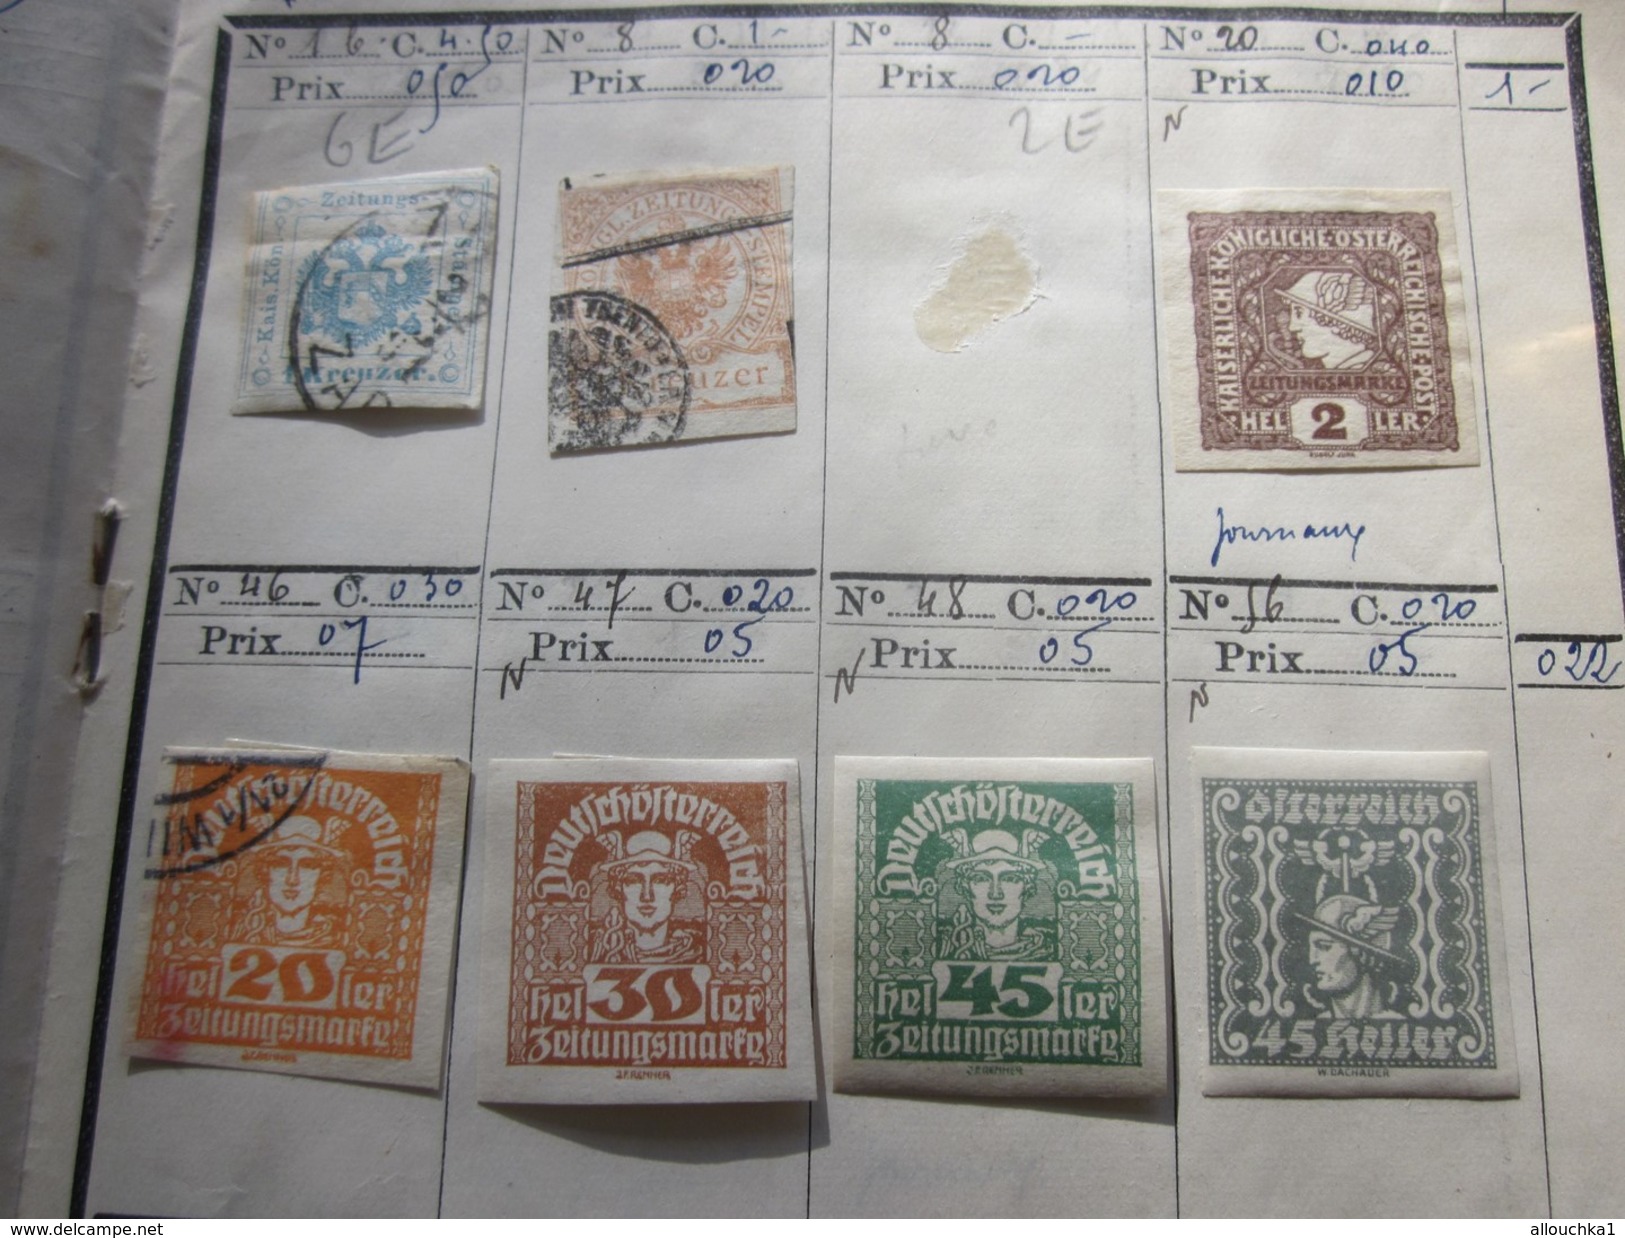 142 Timbres > Europe> Autriche >Österreich Collections dans carnet 188 Faire défiler scanns Cotes en Francs cotation1980